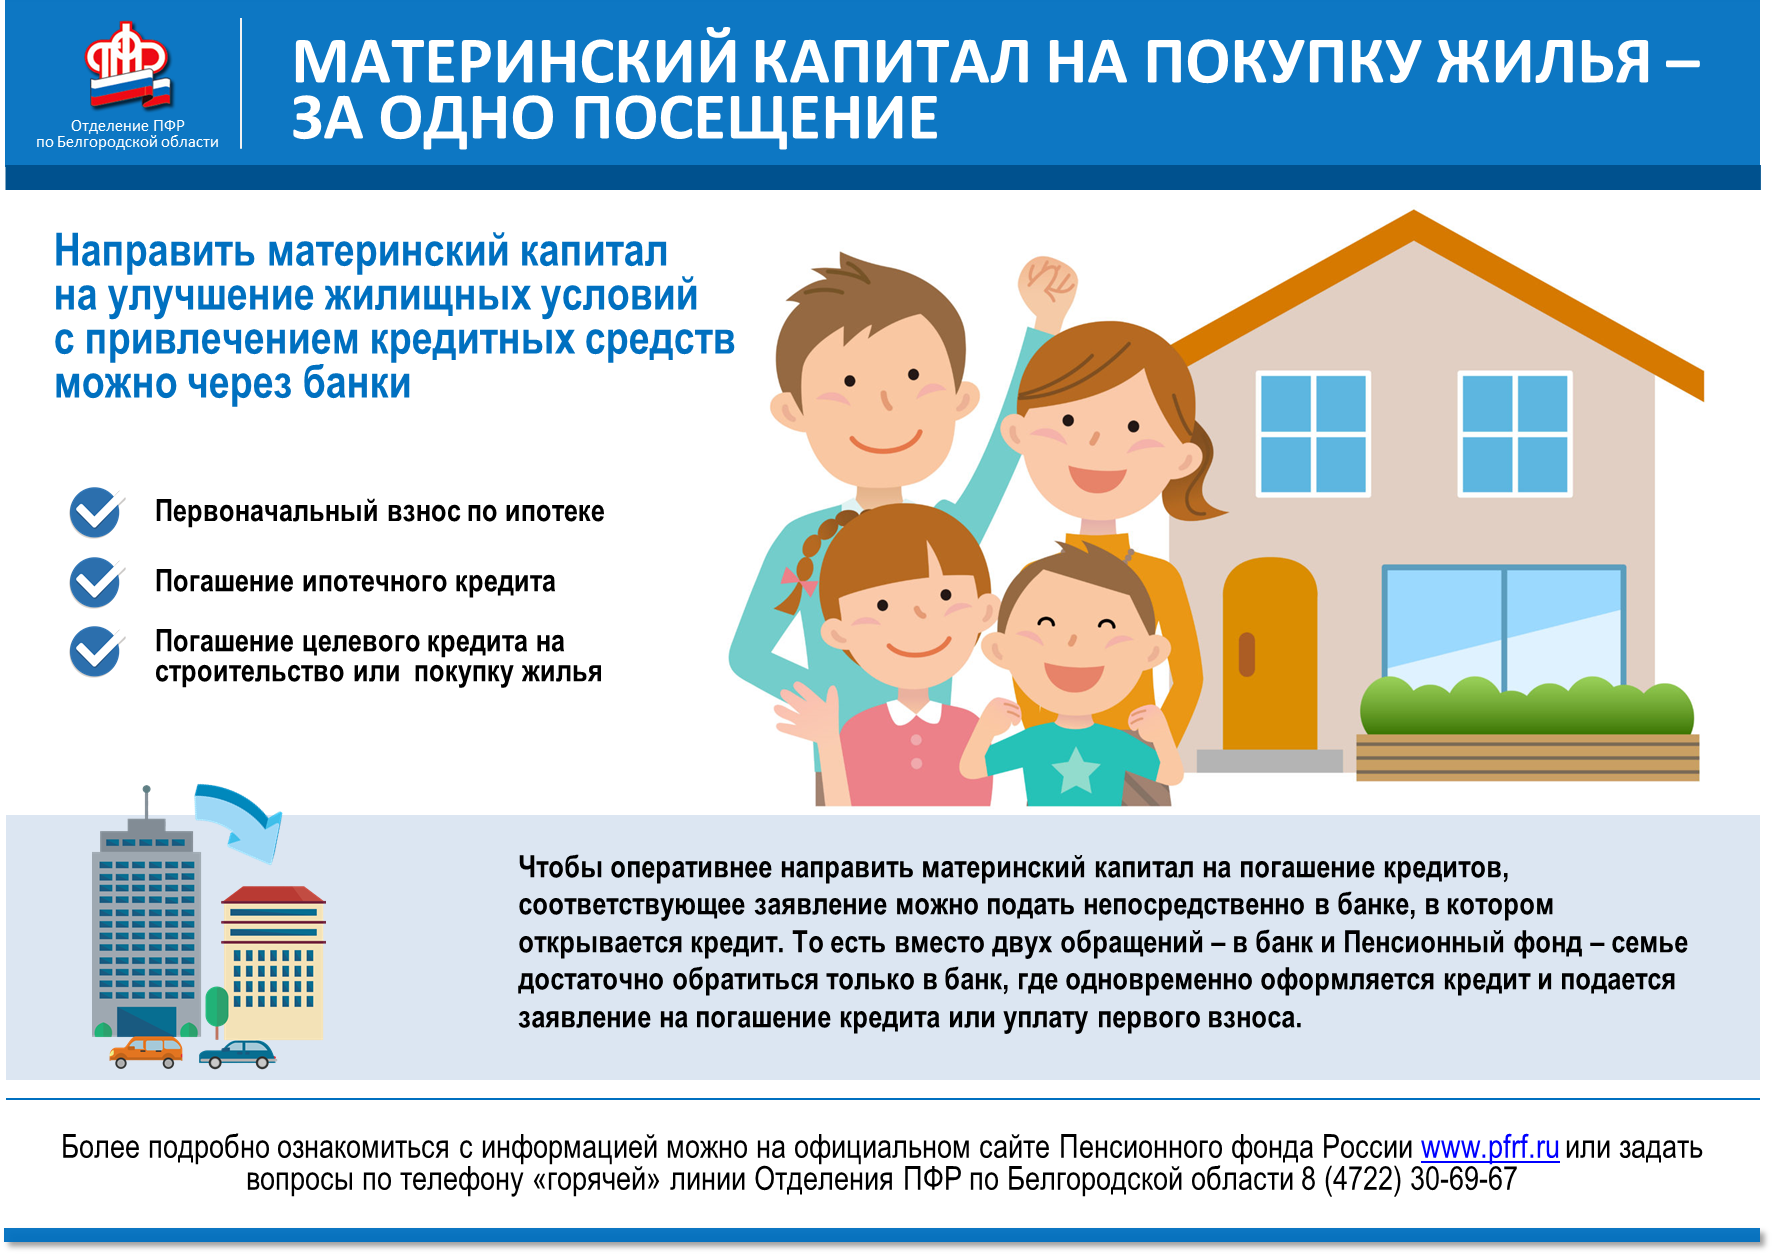 Квартира в ипотеке с материнским капиталом: как продать, поделить при разводе, использовать с военной ипотекой